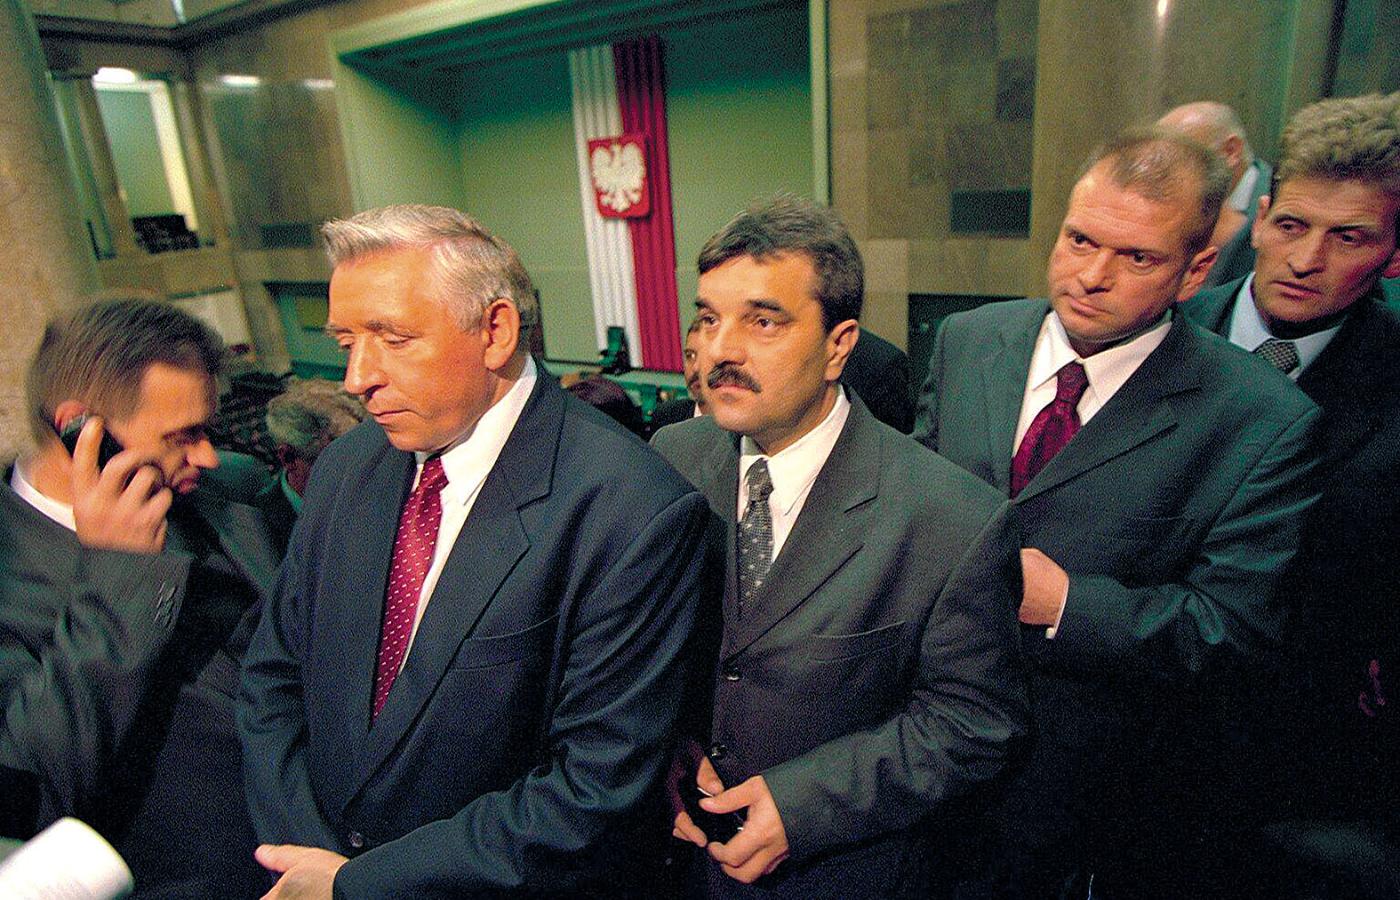 Andrzej Lepper, Krzysztof Filipek (przyboczny szefa), Krzysztof Rutkowski (detektyw skonfliktowany z szefem?), Józef Laskowski